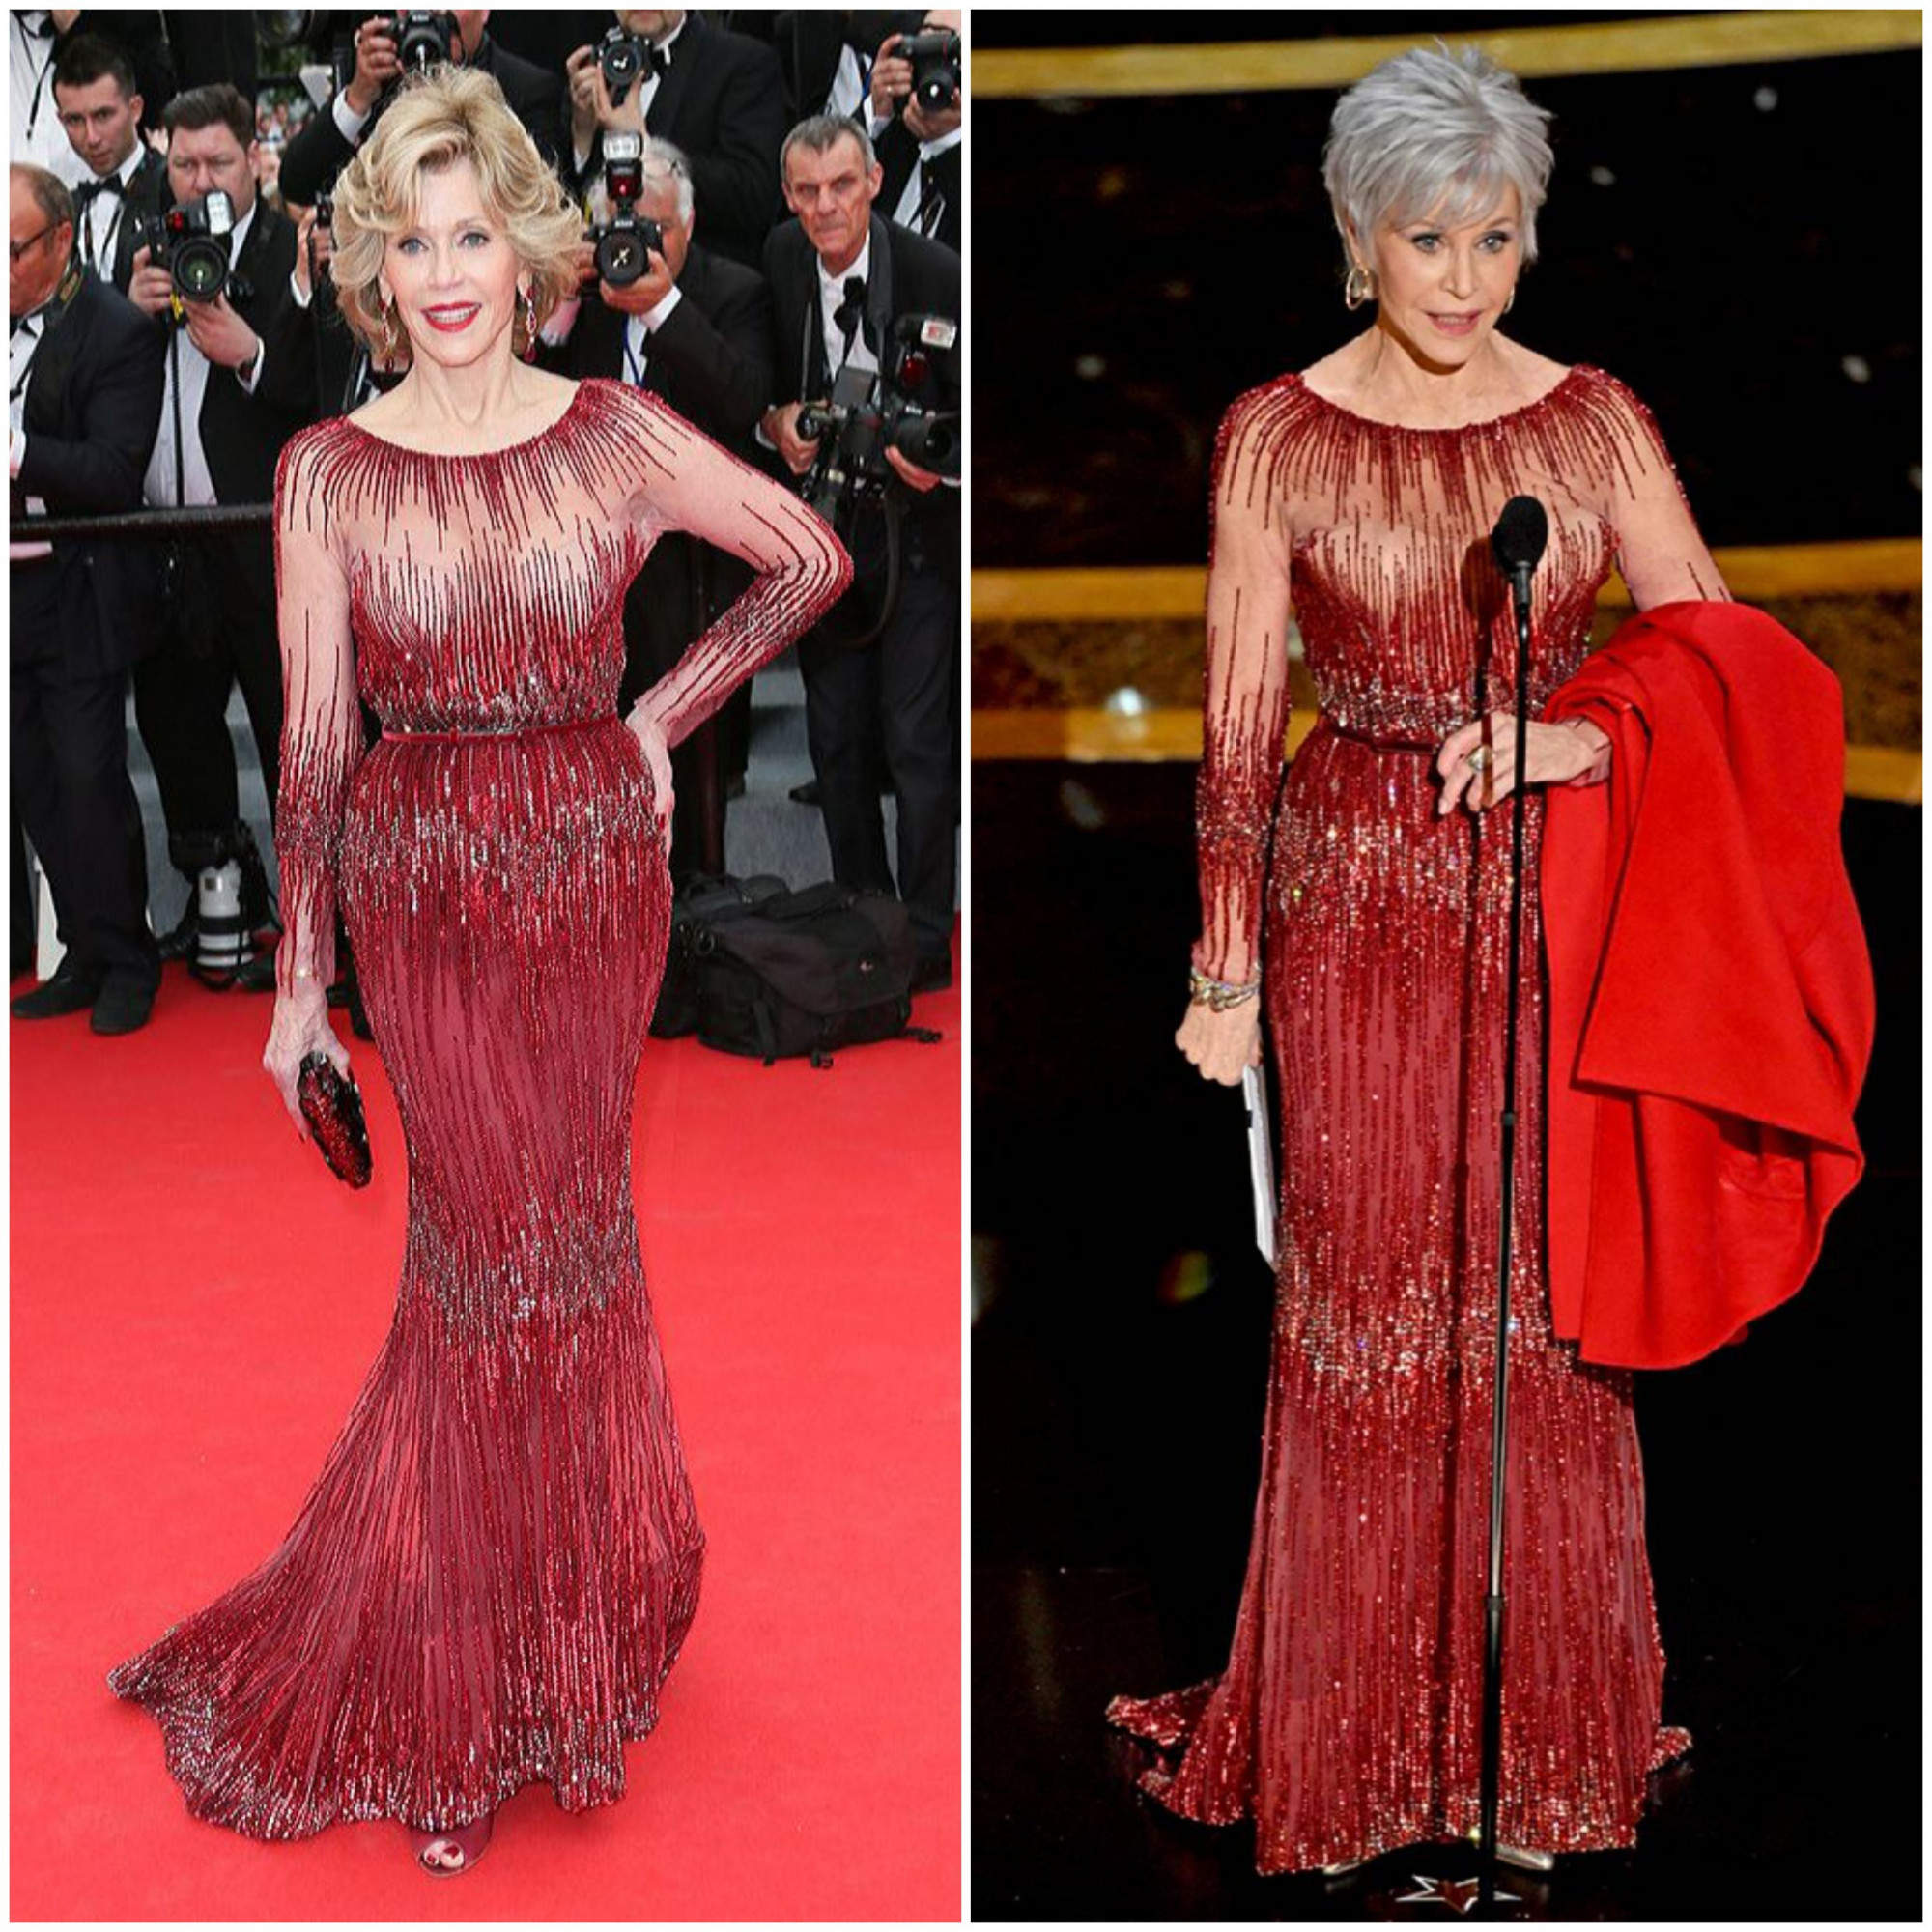 Tại Oscar lần thứ 92 vừa diễn ra, Jane Fonda nổi bật trong chiếc đầm đỏ của Elie Saab, đính nhiều hạt pha lê cùng áo khác choàng đồng màu. Bộ cánh được nữ diễn viên diện cách đây 6 năm tại Liên hoan phim Cannes 2014. Trước khi trao Phim hay nhất, nữ diễn viên 82 tuổi tay cầm chiếc áo choàng đỏ và tâm sự: “Bạn thấy chiếc áo khoác này không… đây là chiếc áo cuối cùng mà tôi đã mua. Khi nói chuyện với mọi người, tôi nhận ra mình phải hạn chế việc mua sắm… Tôi không cần sắm quá nhiều thứ và tôi quyết định không mua thêm bất kỳ bộ quần áo nào nữa”.